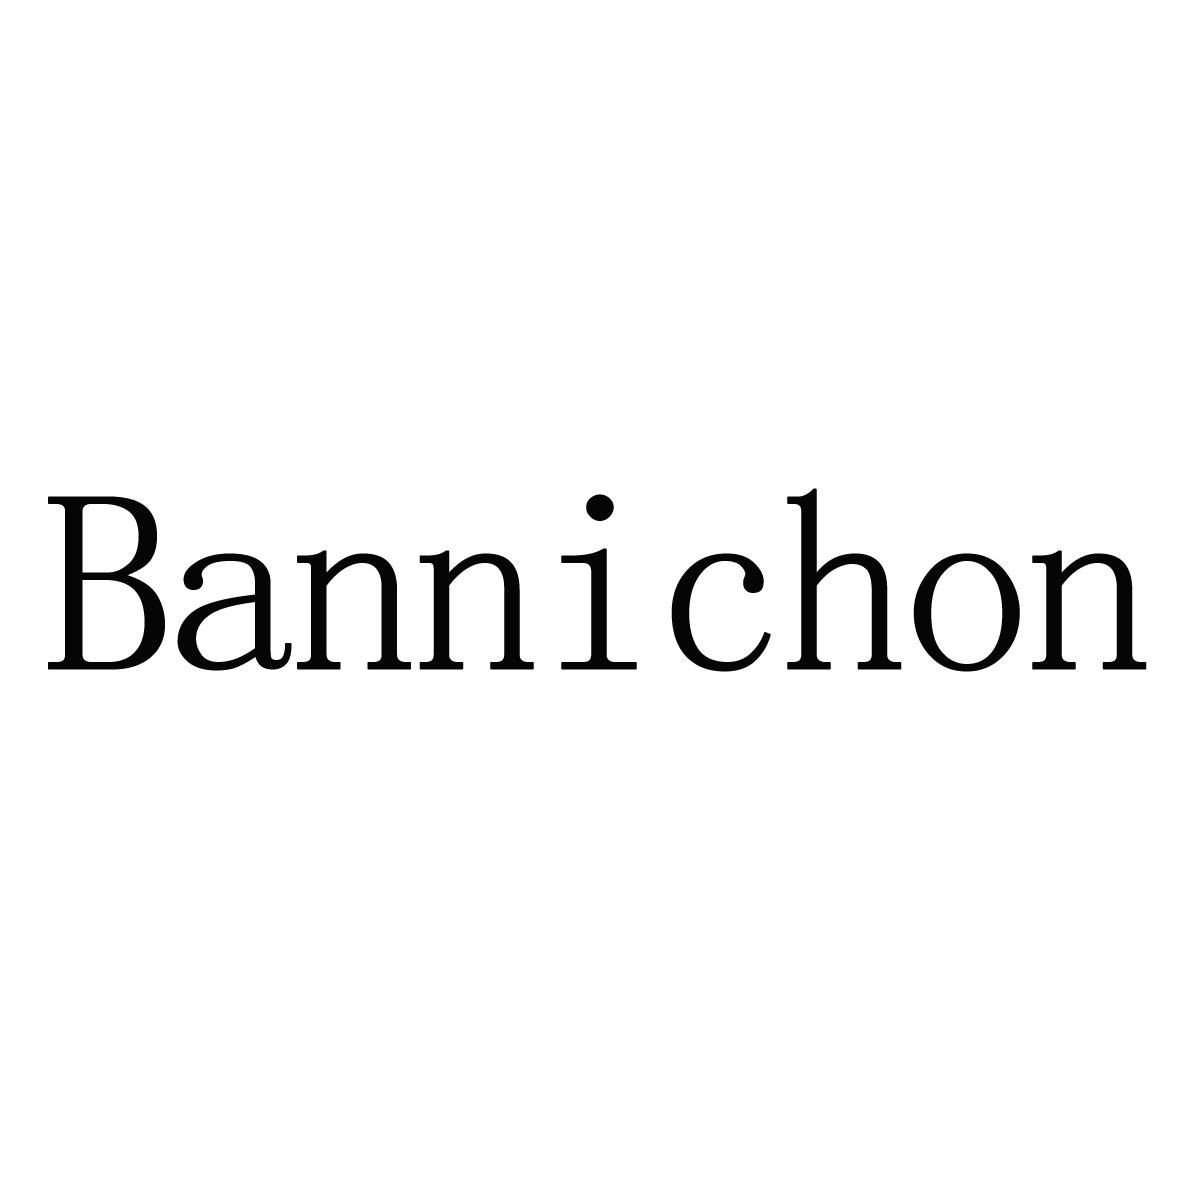 BANNICHON